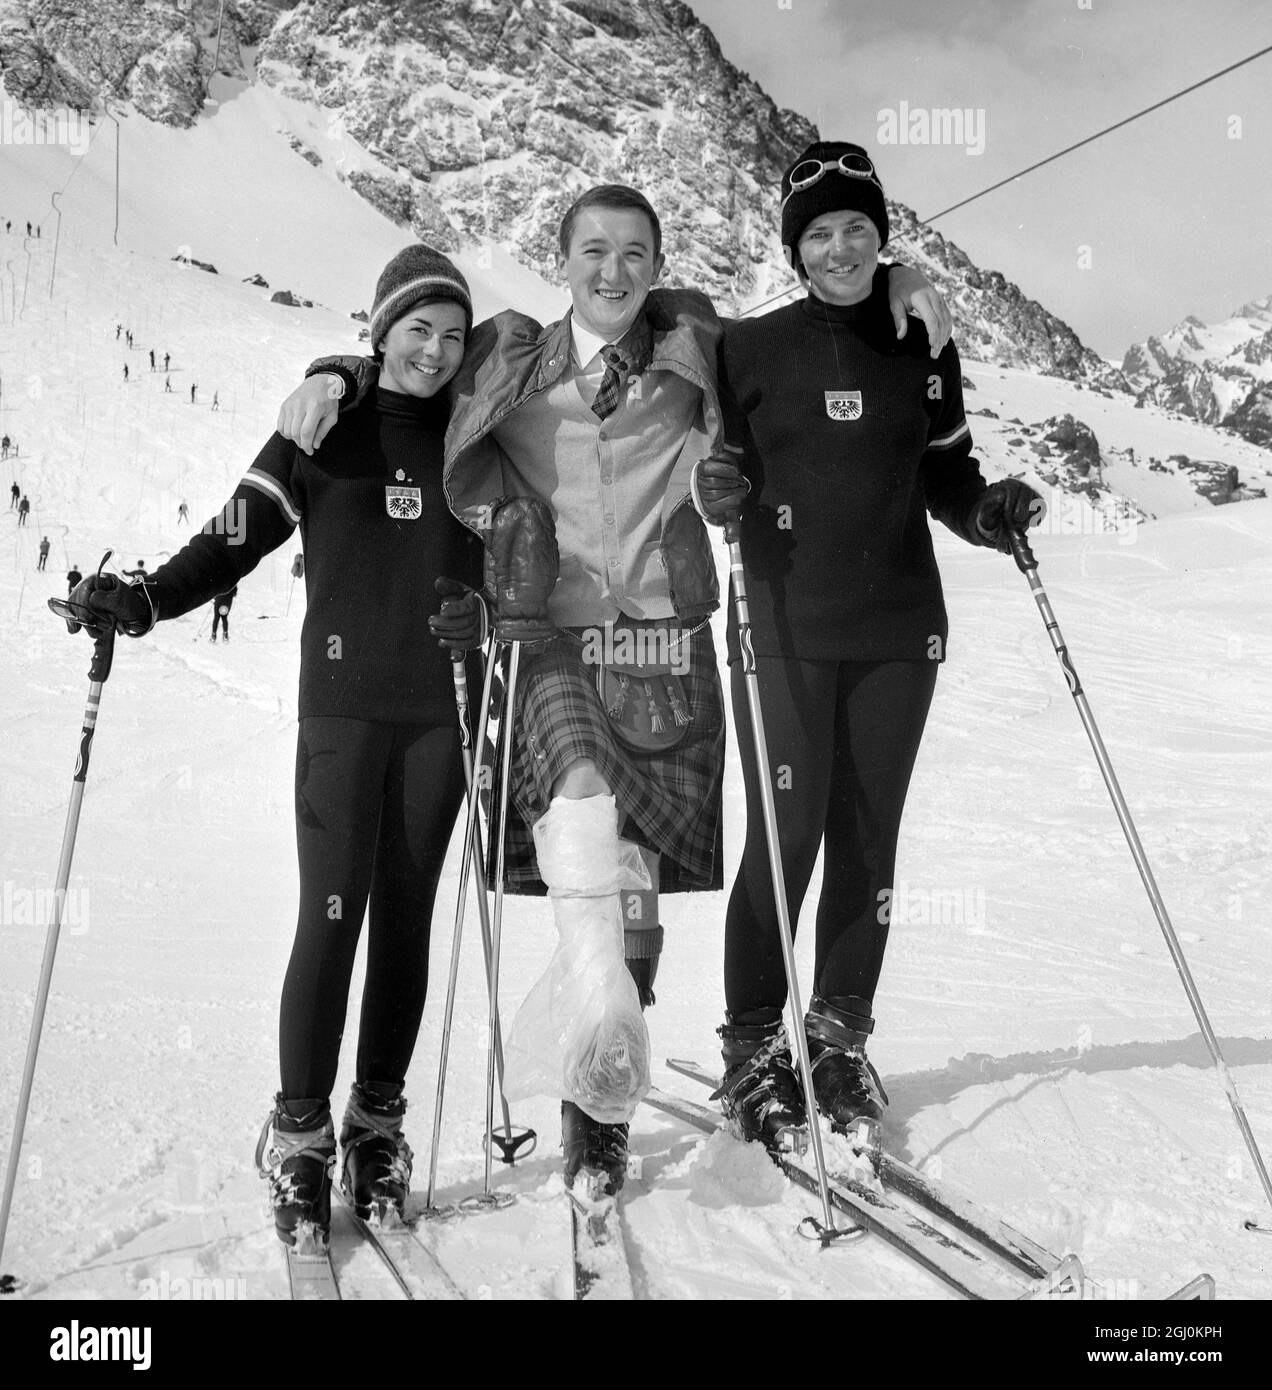 Portillo, Chile: Trotz einer Verletzung lächelt Ken Campbell, der schottische Skifahrerin, mit den österreichischen Skistarinnen Heidi Zimmermann und Traudl Hecher, als am 4. August 1966 in Portillo, Chile, die Ski-WM begann. 160 Skifahrer aus 22 Ländern, darunter Großbritannien, nehmen an den Meisterschaften Teil. August 1966 Stockfoto